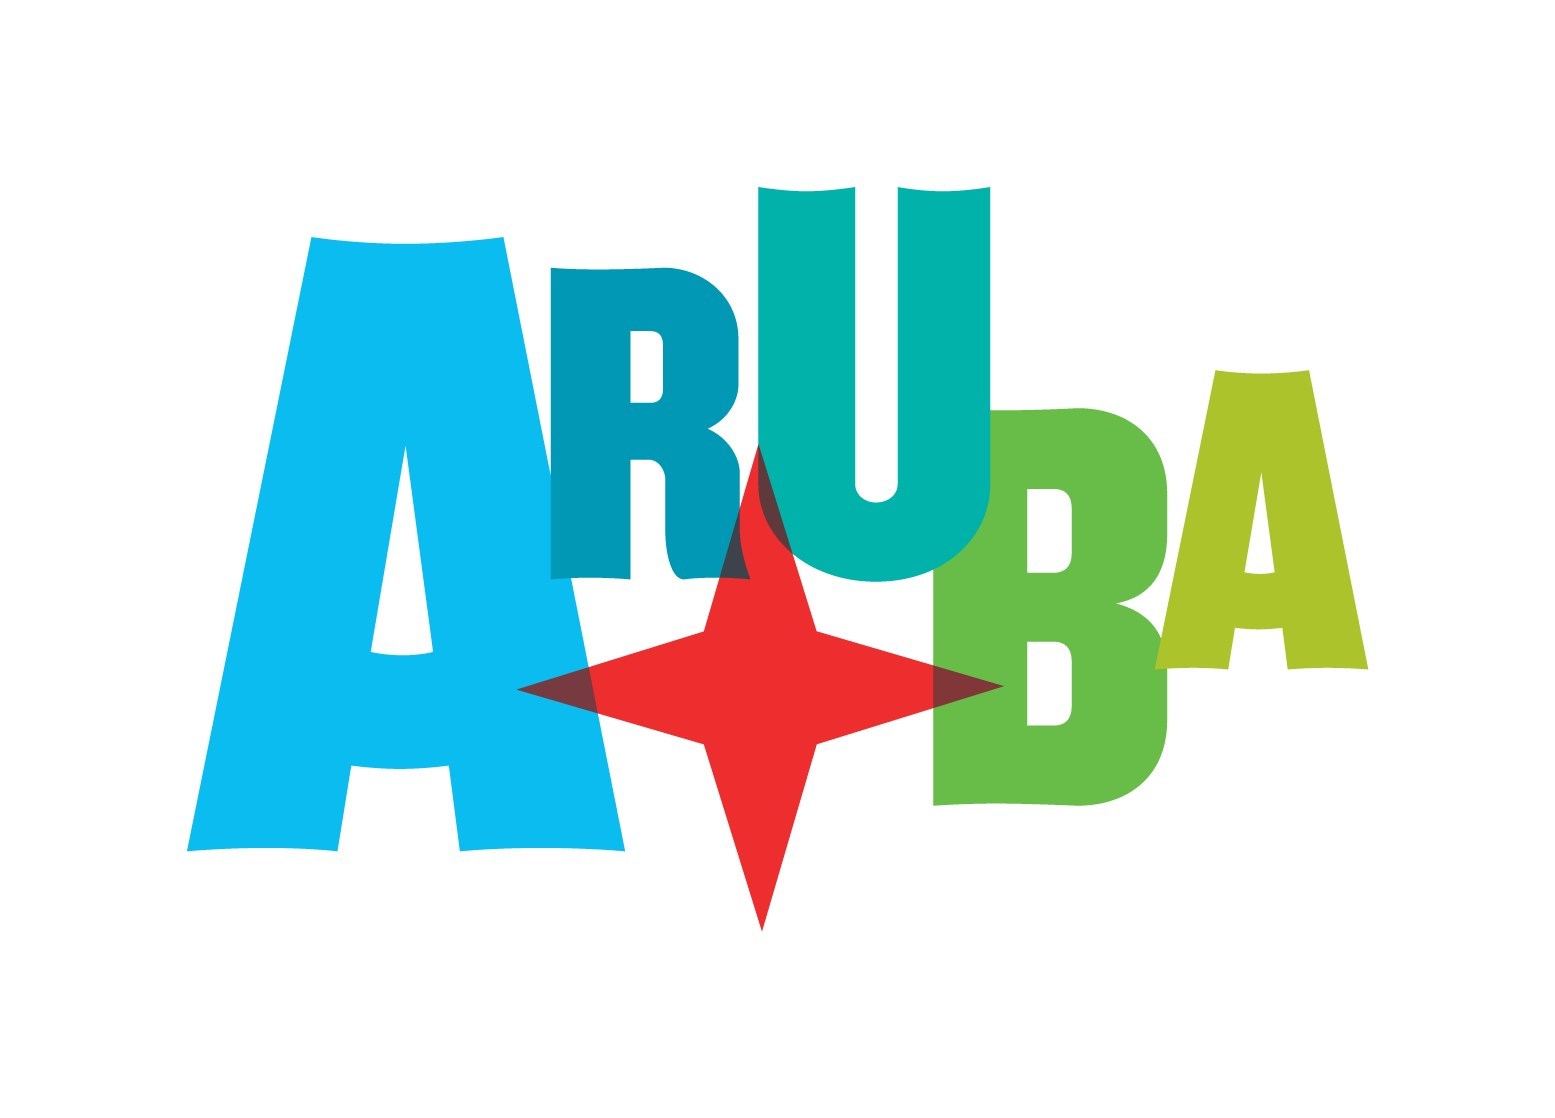 Aruba Tourism Authority logo (PRNewsfoto/Aruba Tourism Authority)